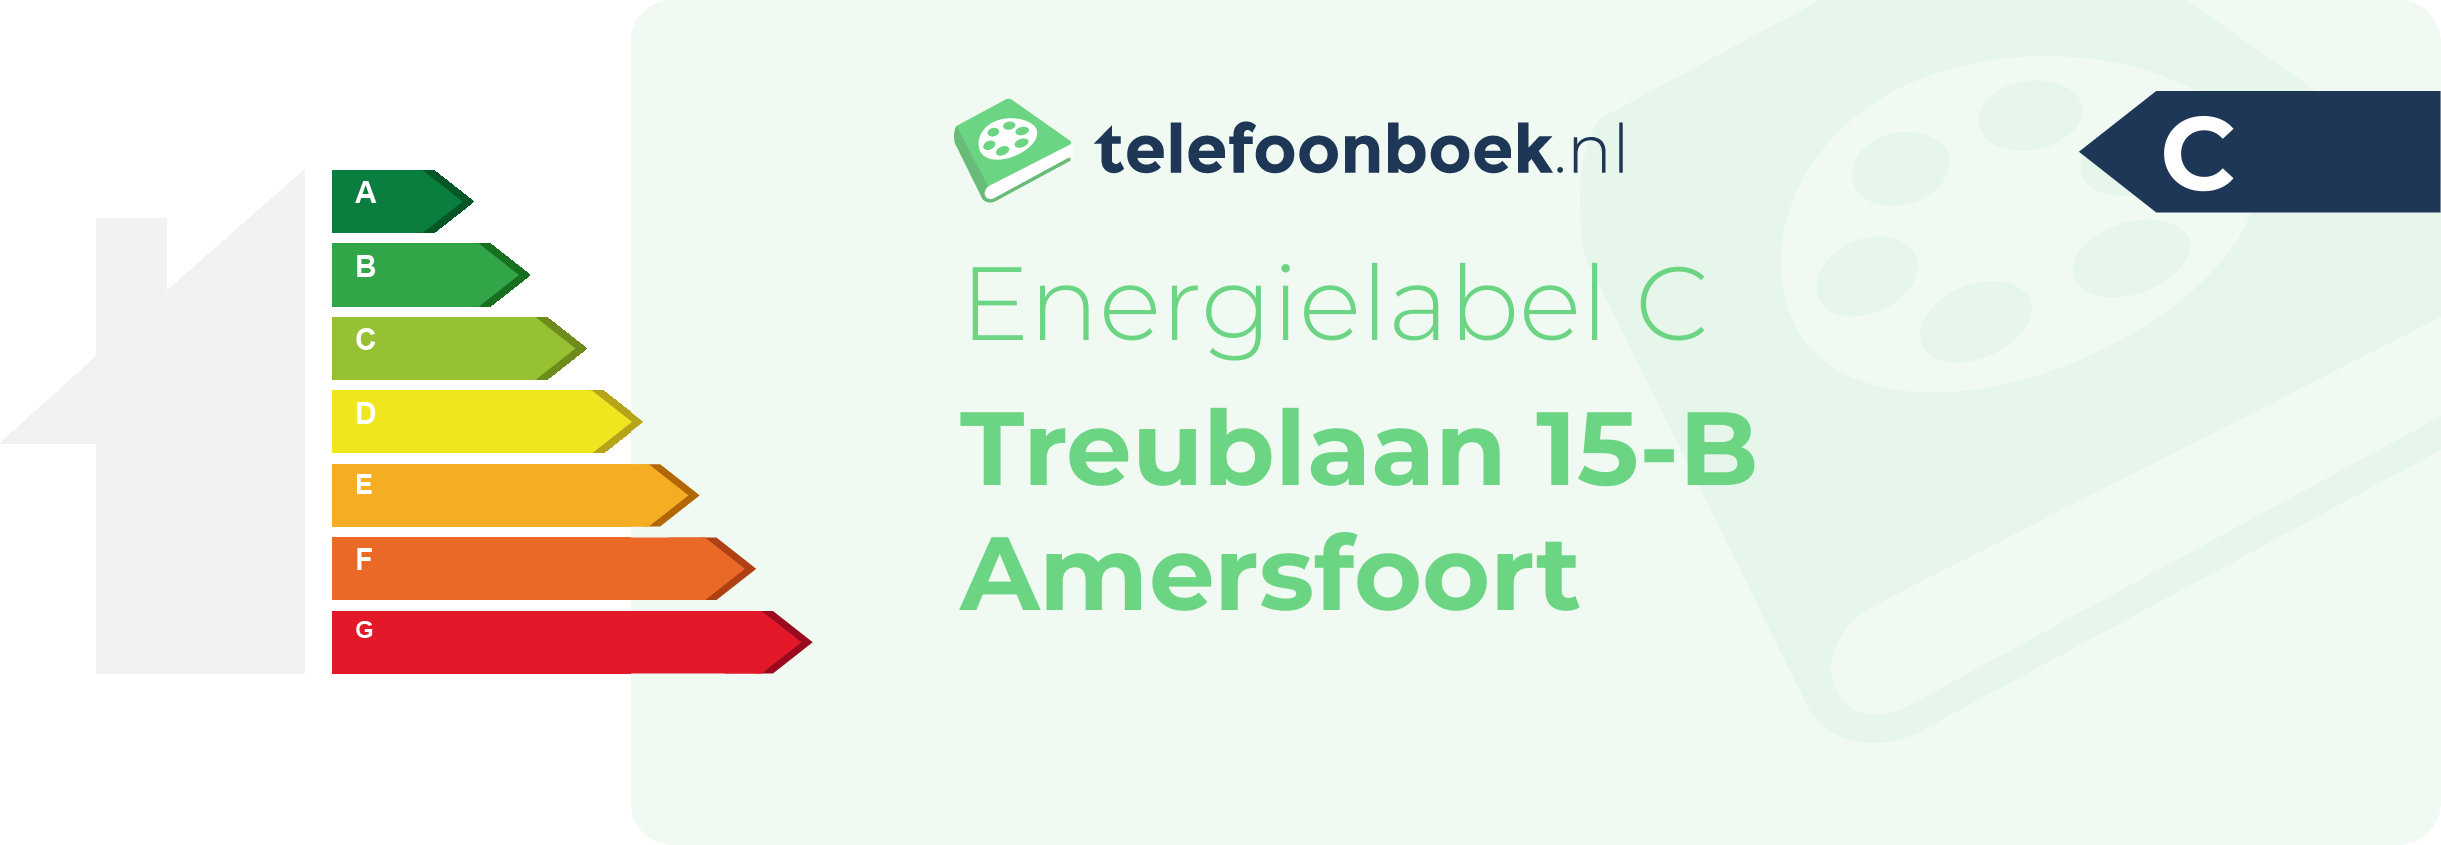 Energielabel Treublaan 15-B Amersfoort